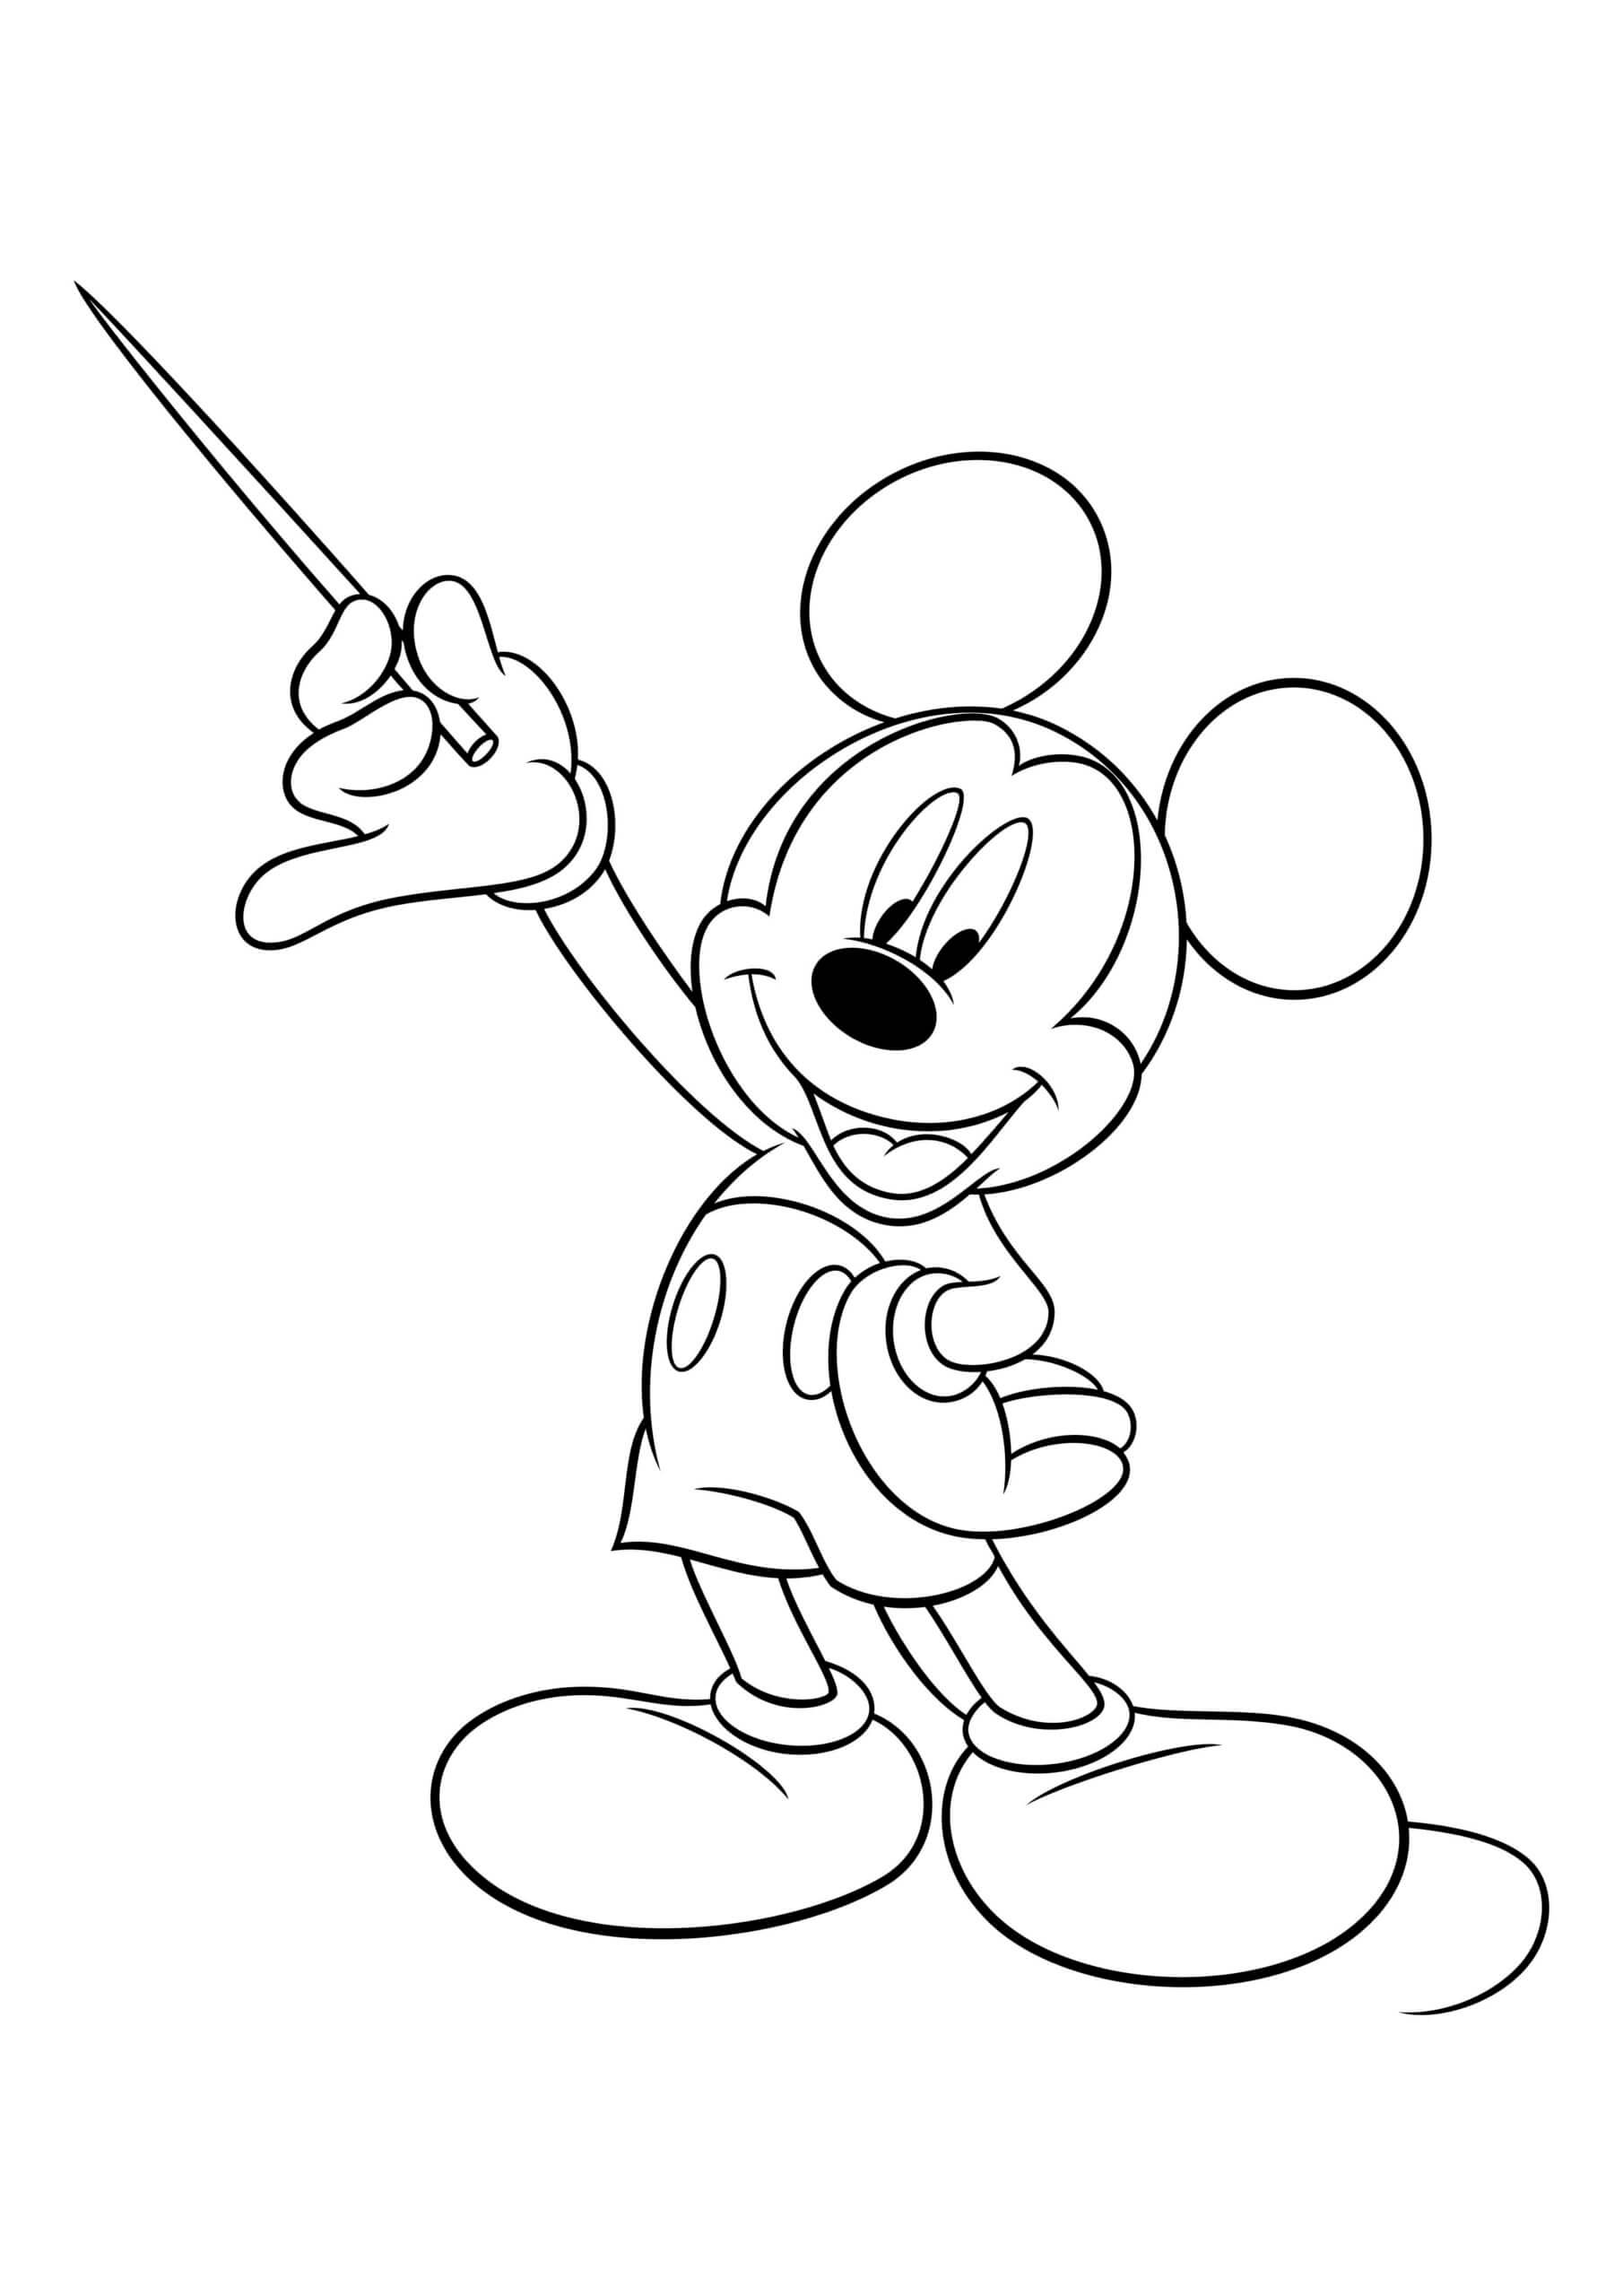 Mickey Mouse houdt een stok vast